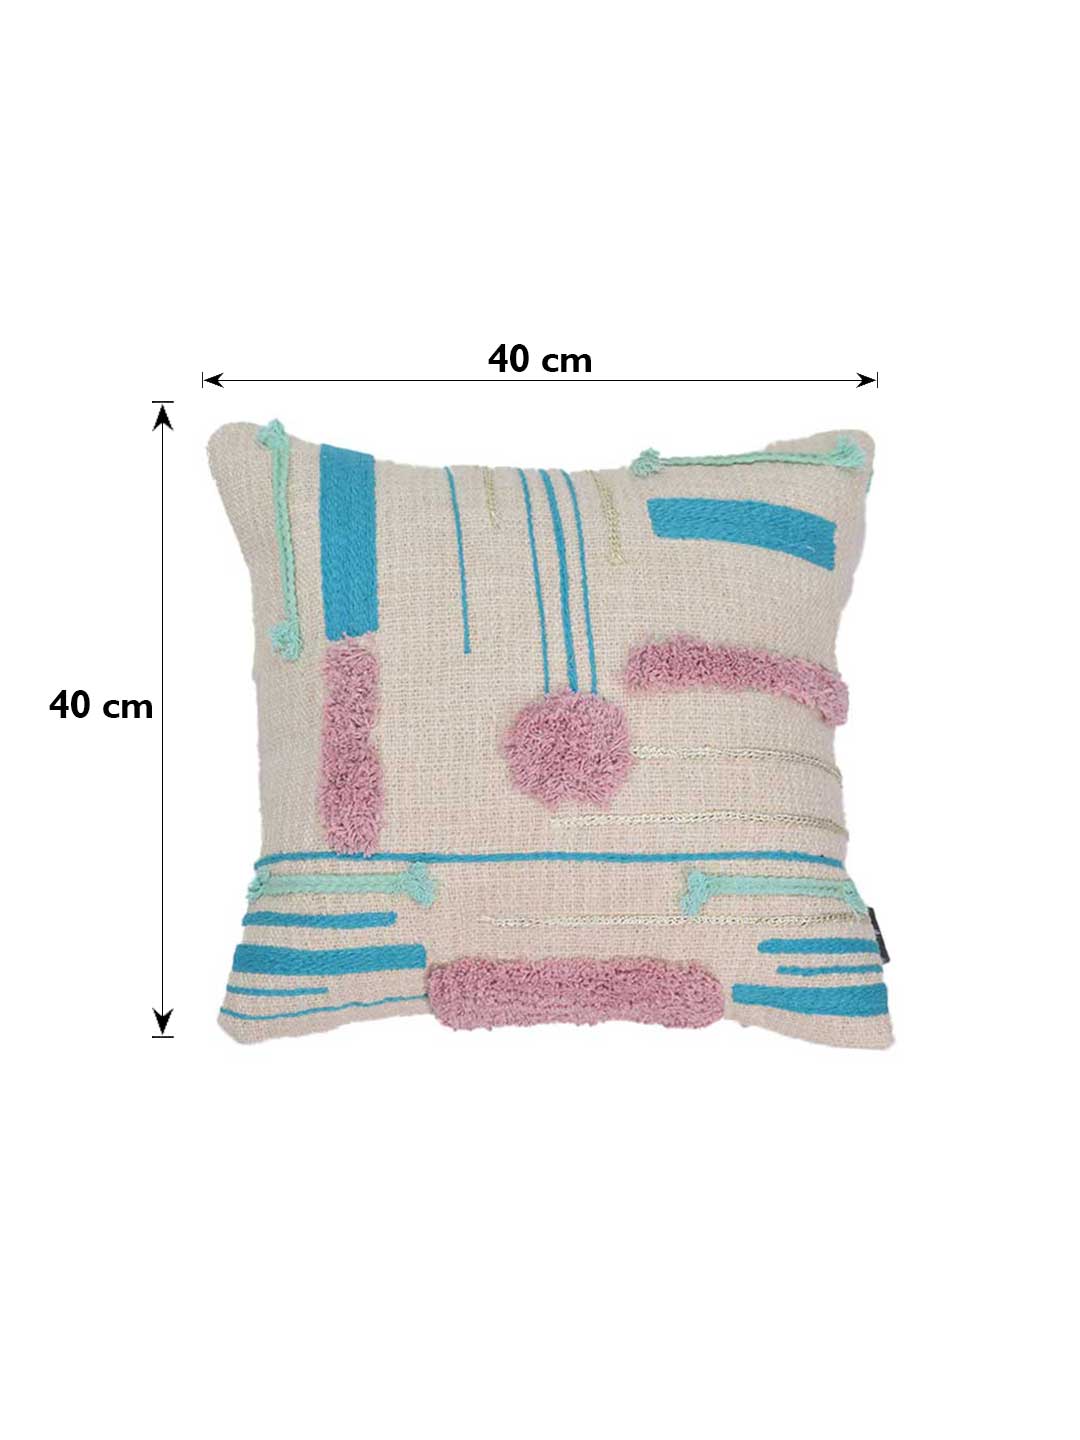 Blanc9 Abstract Geometric Cushion Cushion Cover